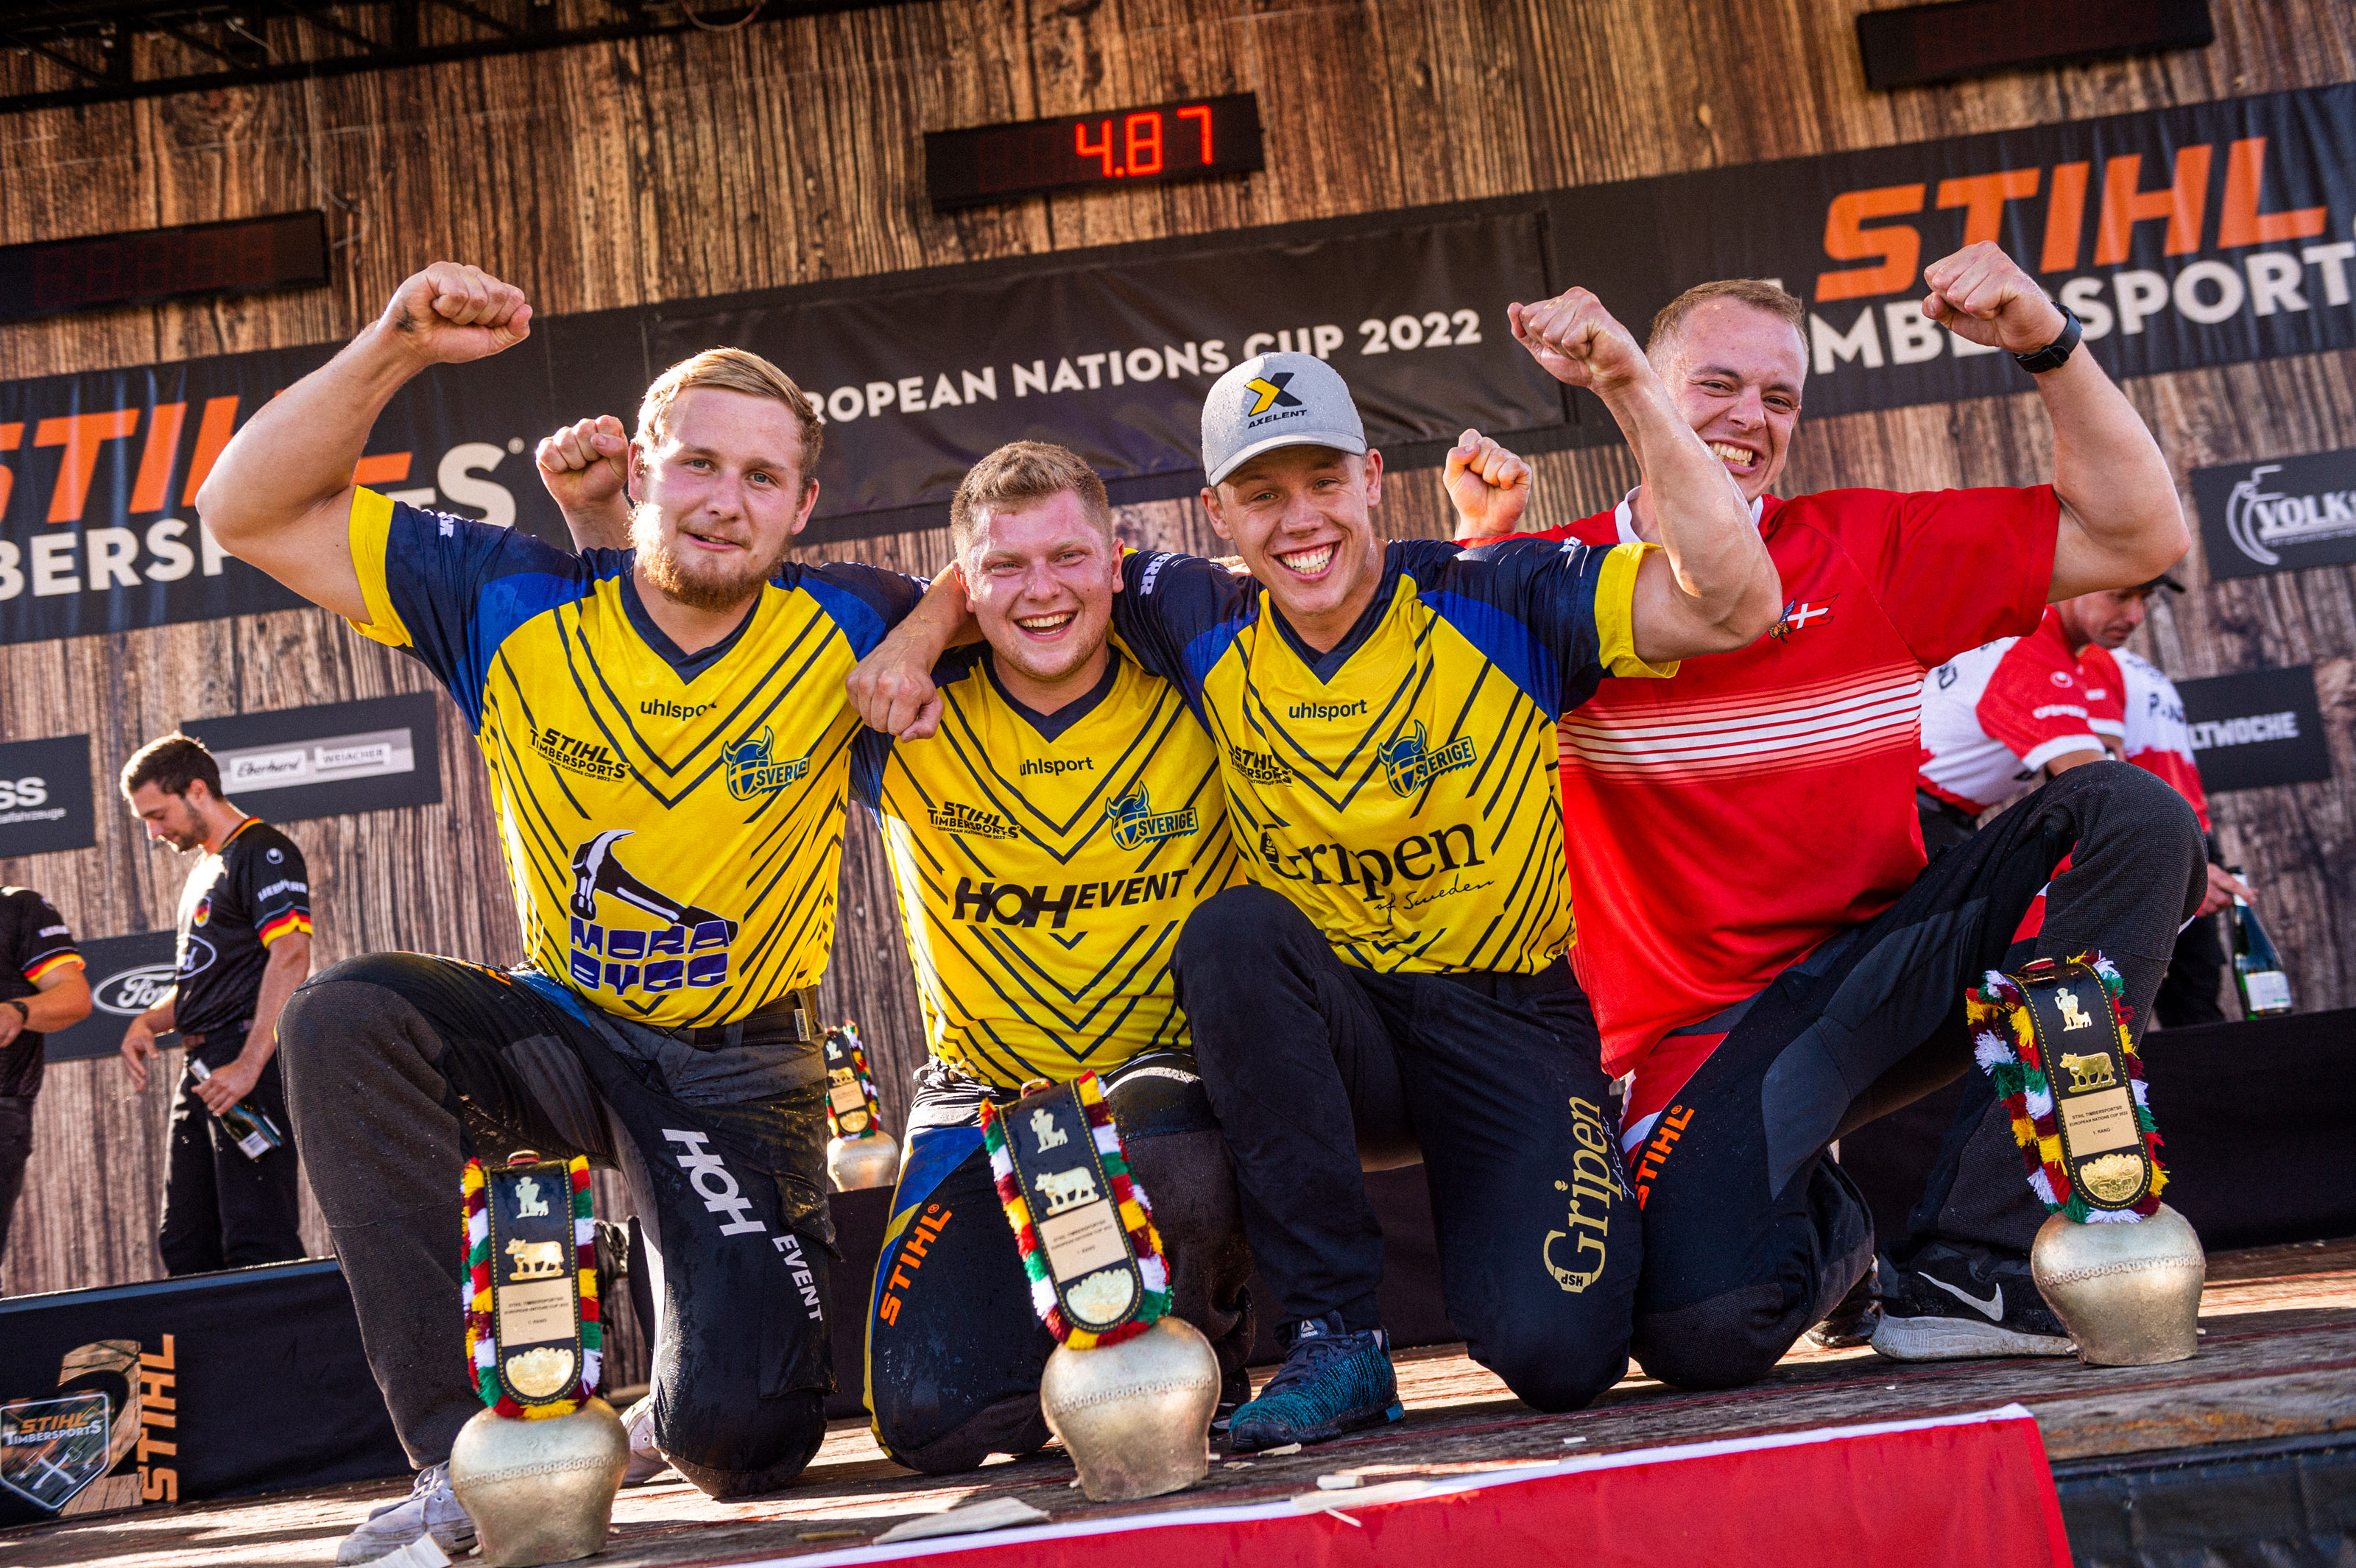 Team Skandinavien, bestehend aus den Schweden Emil Hansson, Edvin Karlsson und Ferry Svan sowie Esben Pedersen aus Dänemark (v.l.n.r.), jubeln über den Sieg beim European Nations Cup 2022.